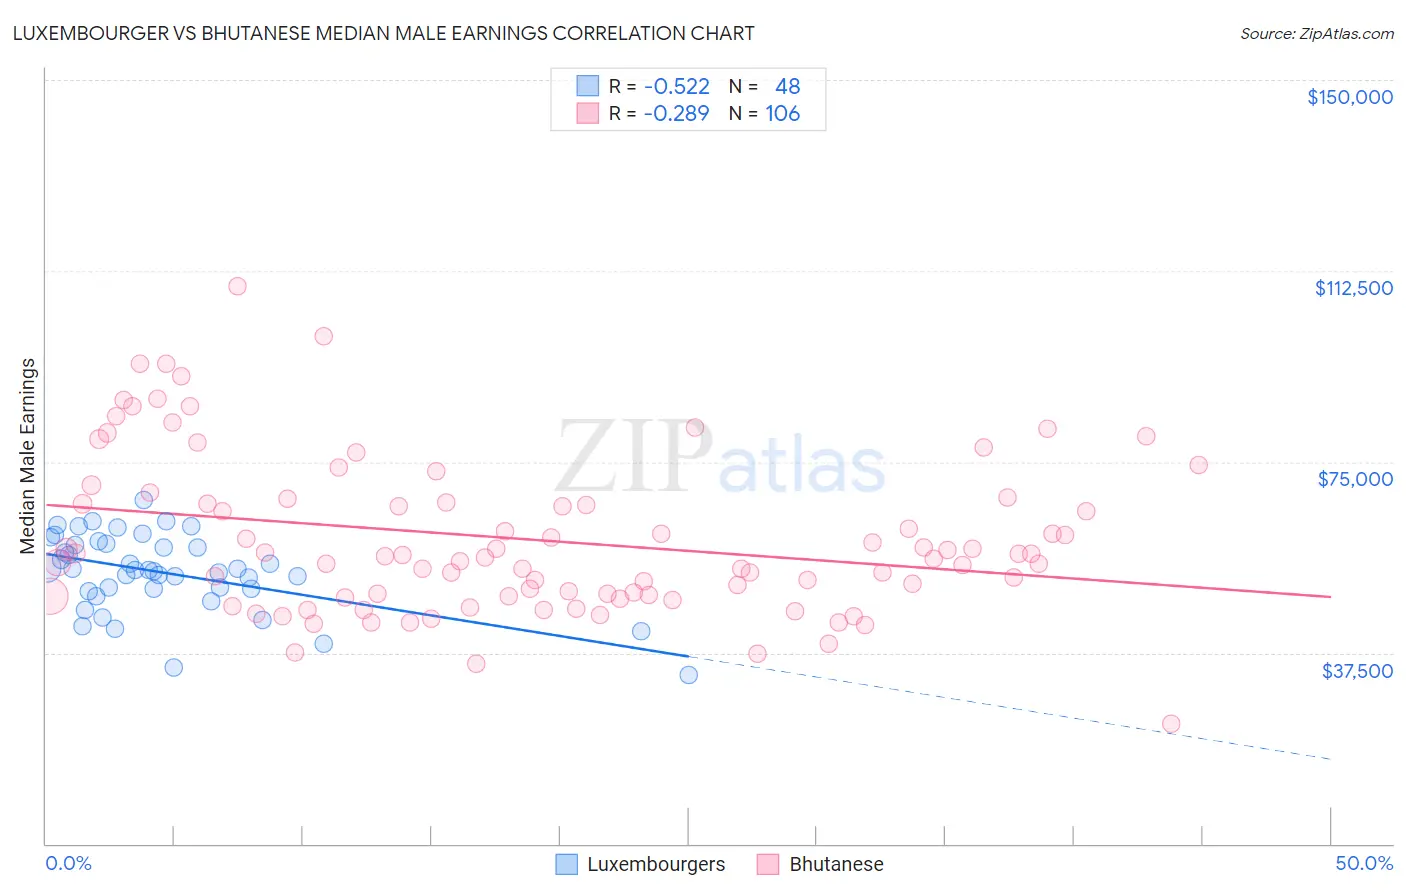 Luxembourger vs Bhutanese Median Male Earnings